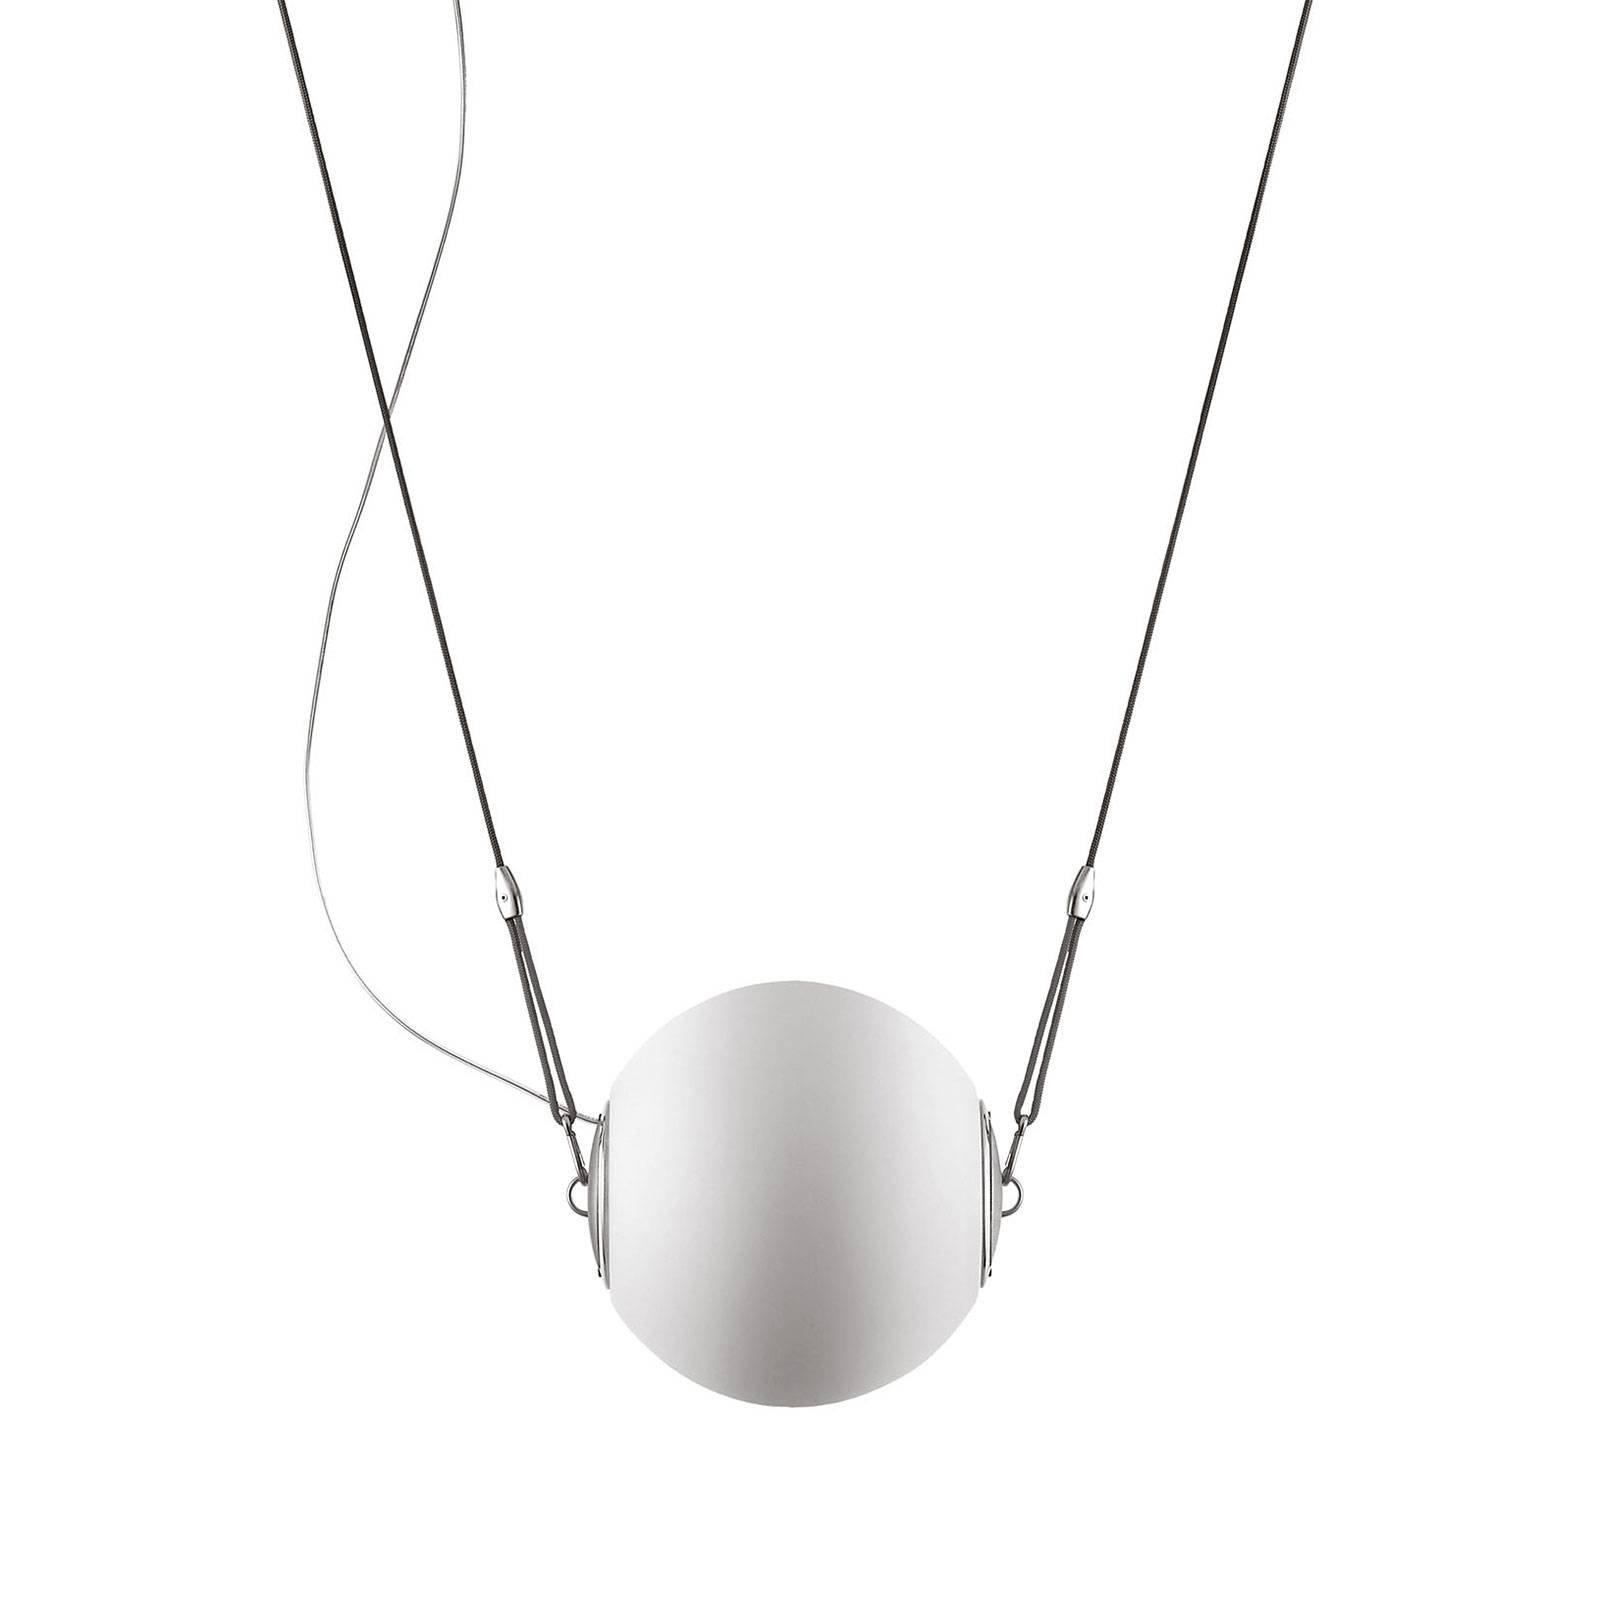 Lumina perla függőlámpa üveggömbbel, ø 28 cm